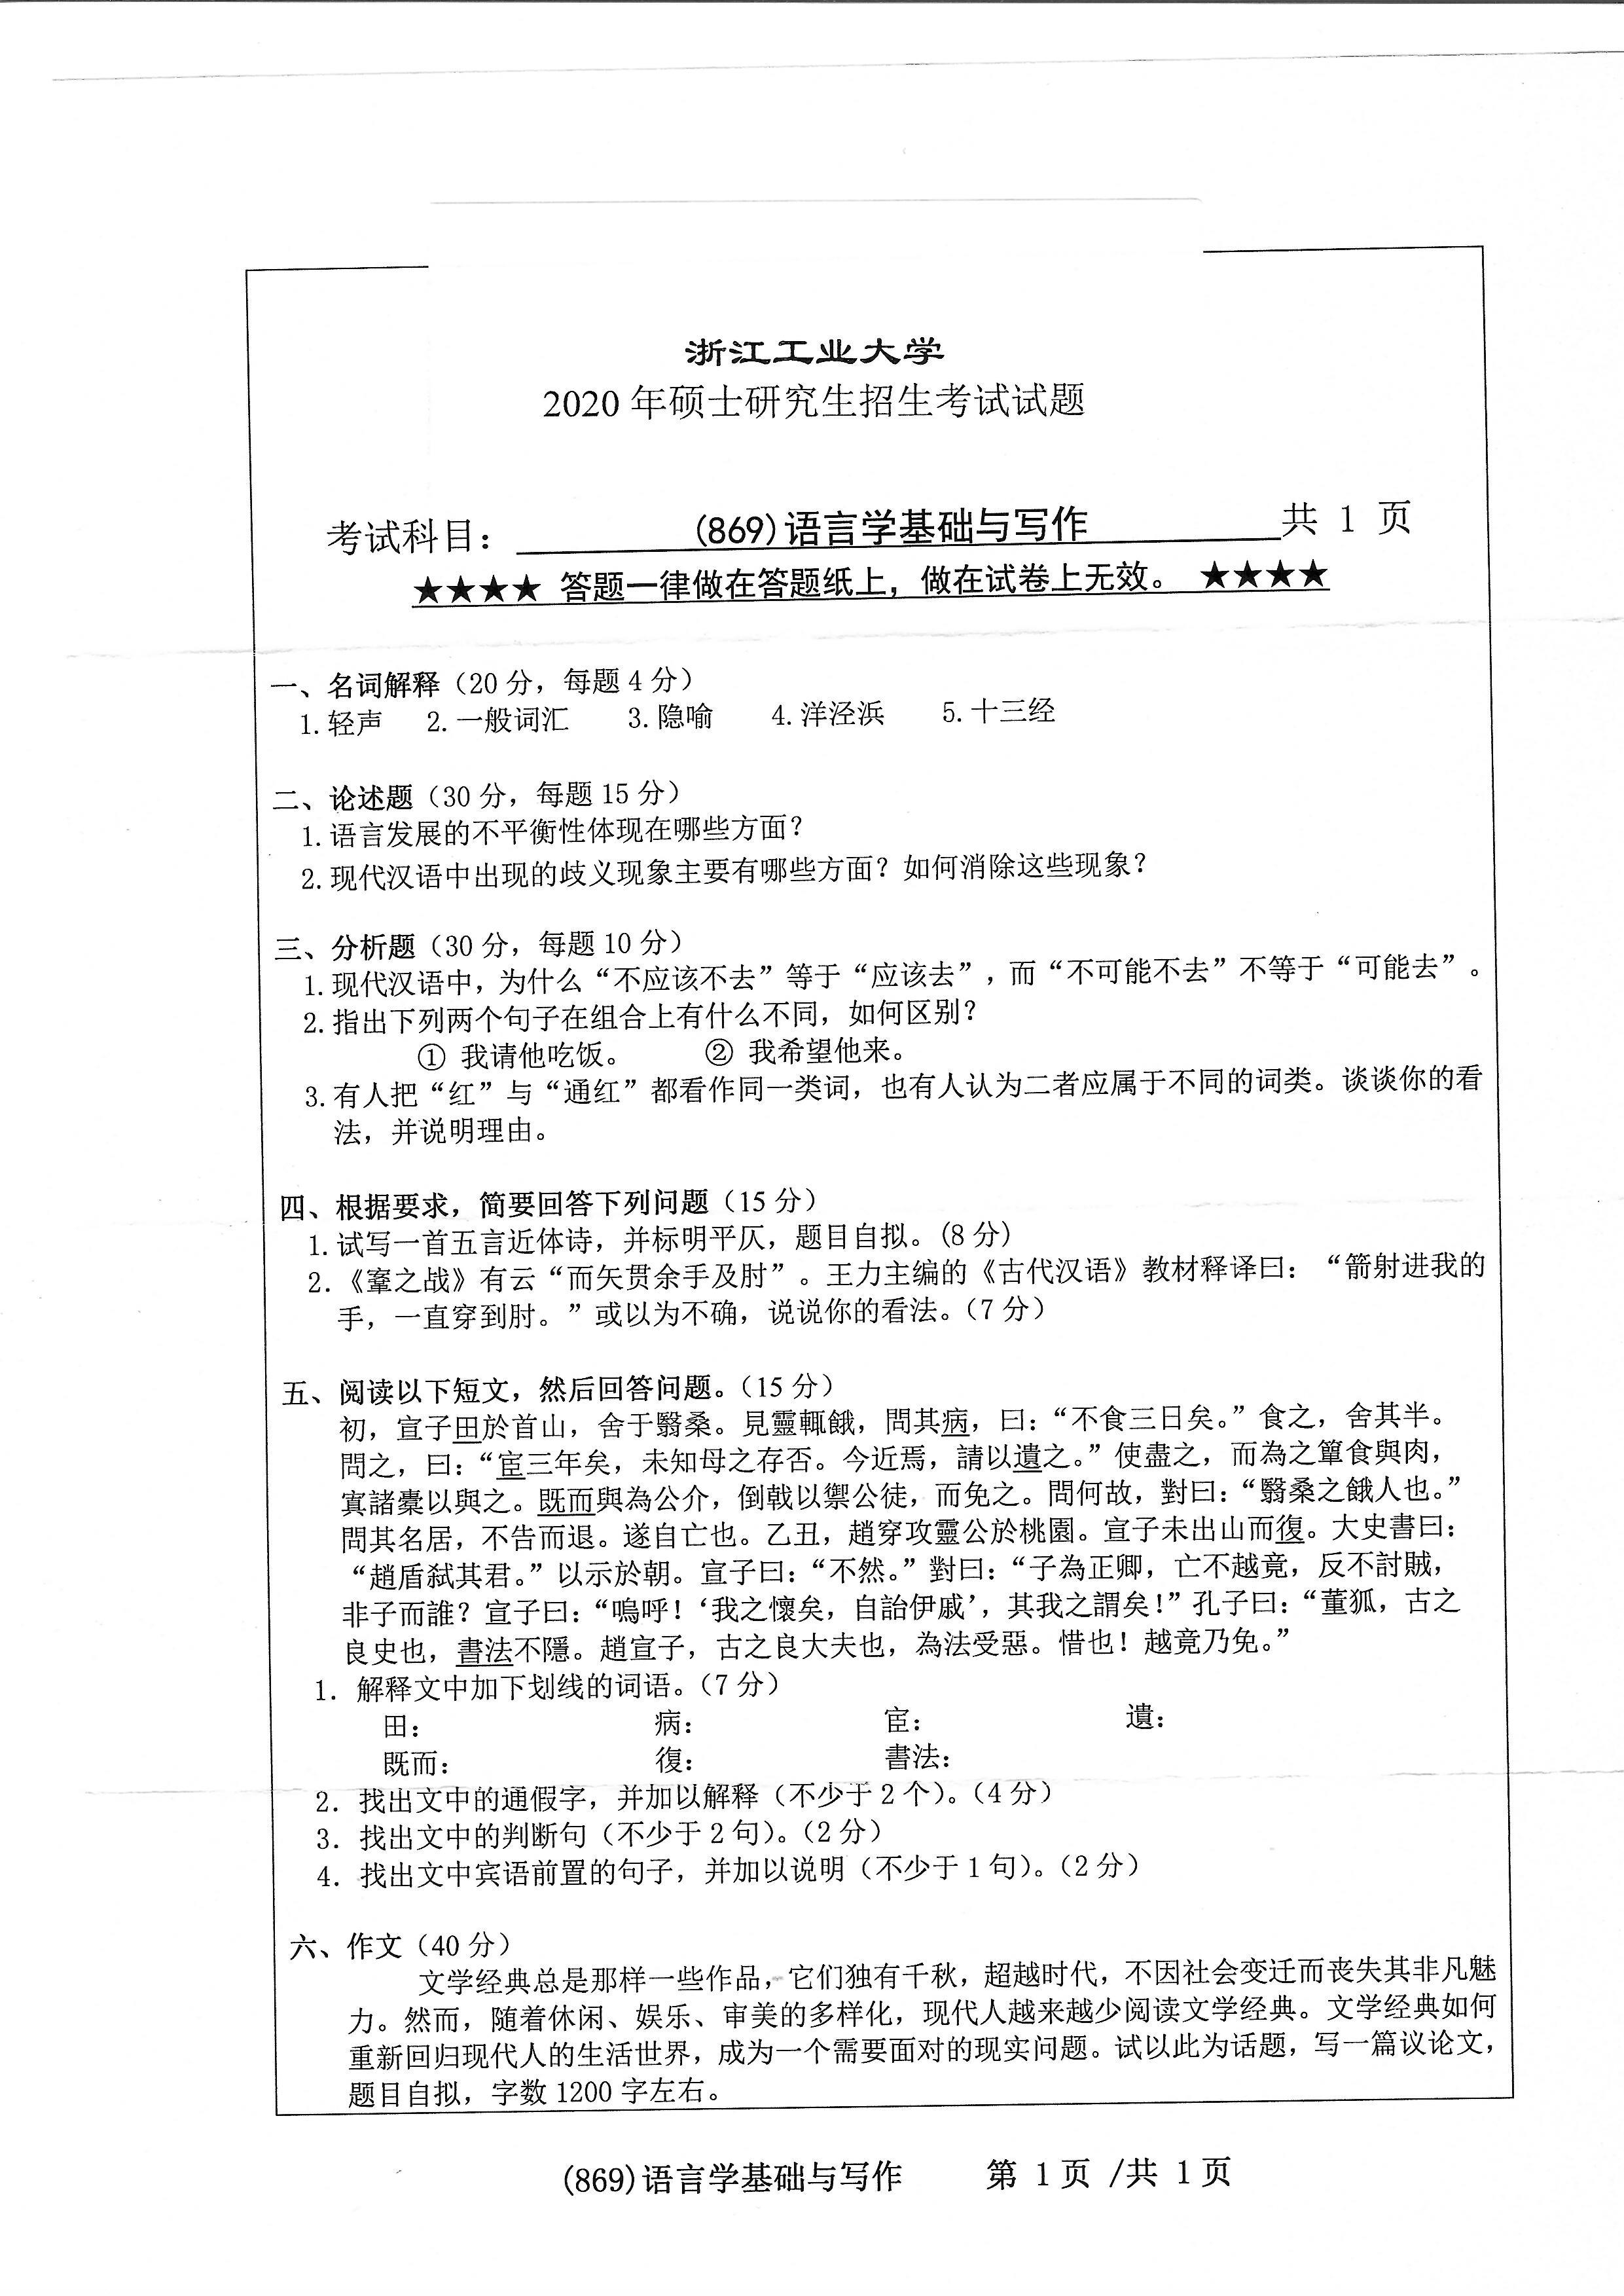 869语言学基础与写作2020年考研初试试卷真题（浙江工业大学）